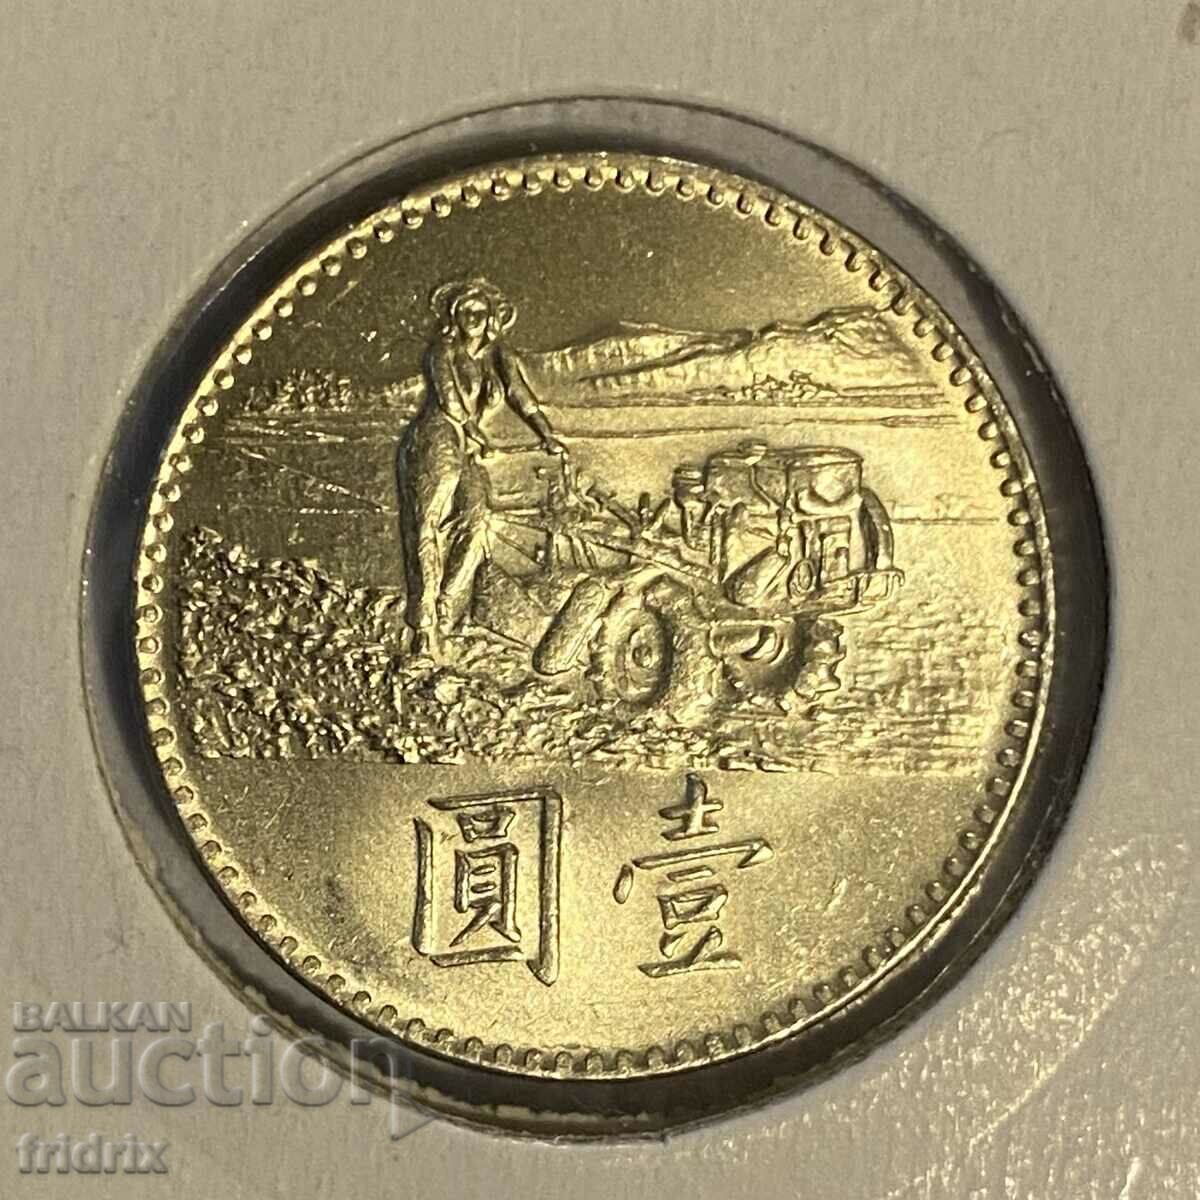 Taiwan 1 yuan dolar FAO / Taiwan 1 dolar 1969 FAO